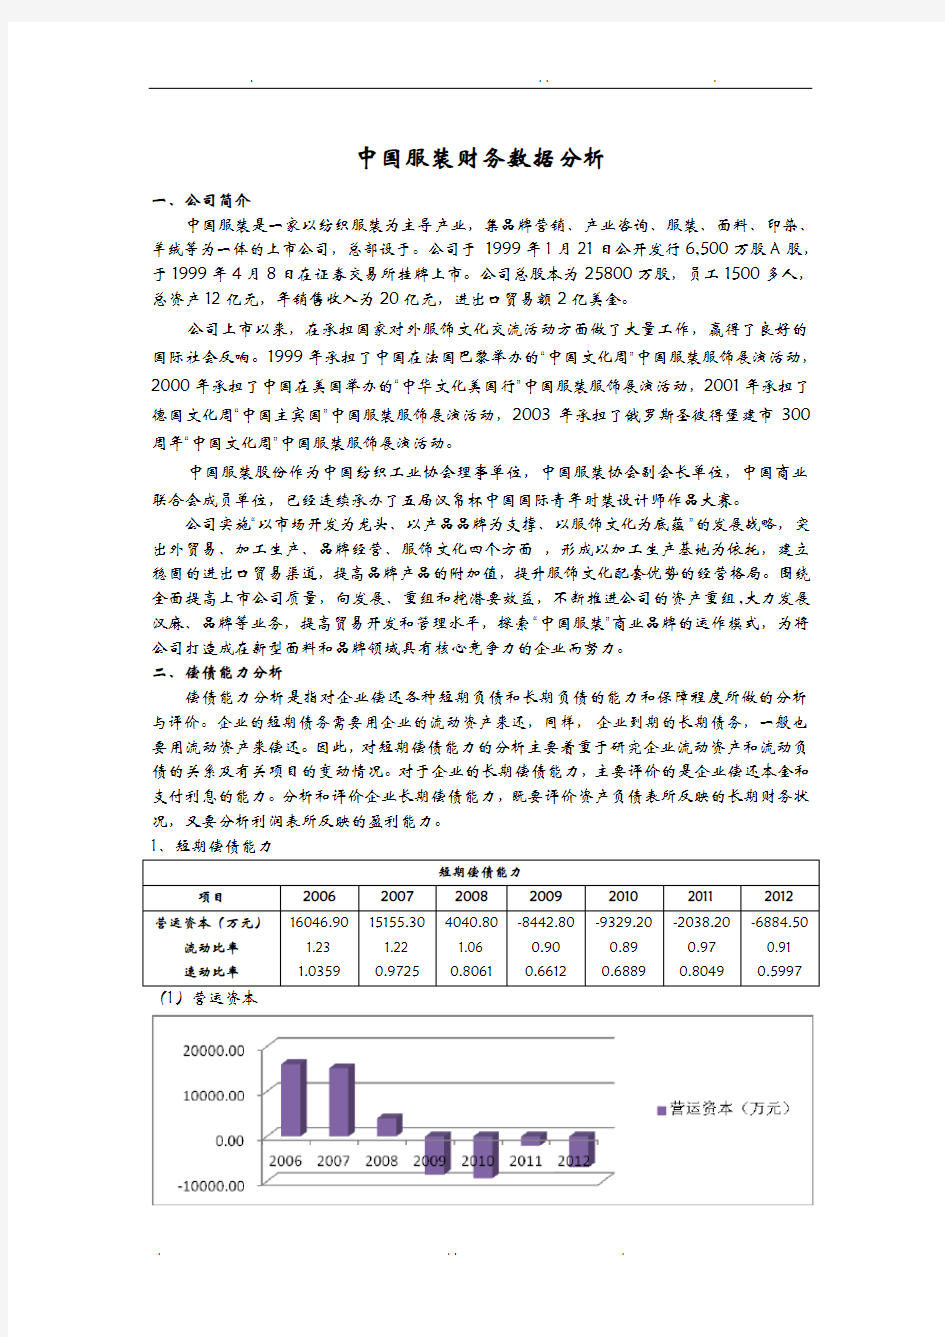 中国服装财务数据分析